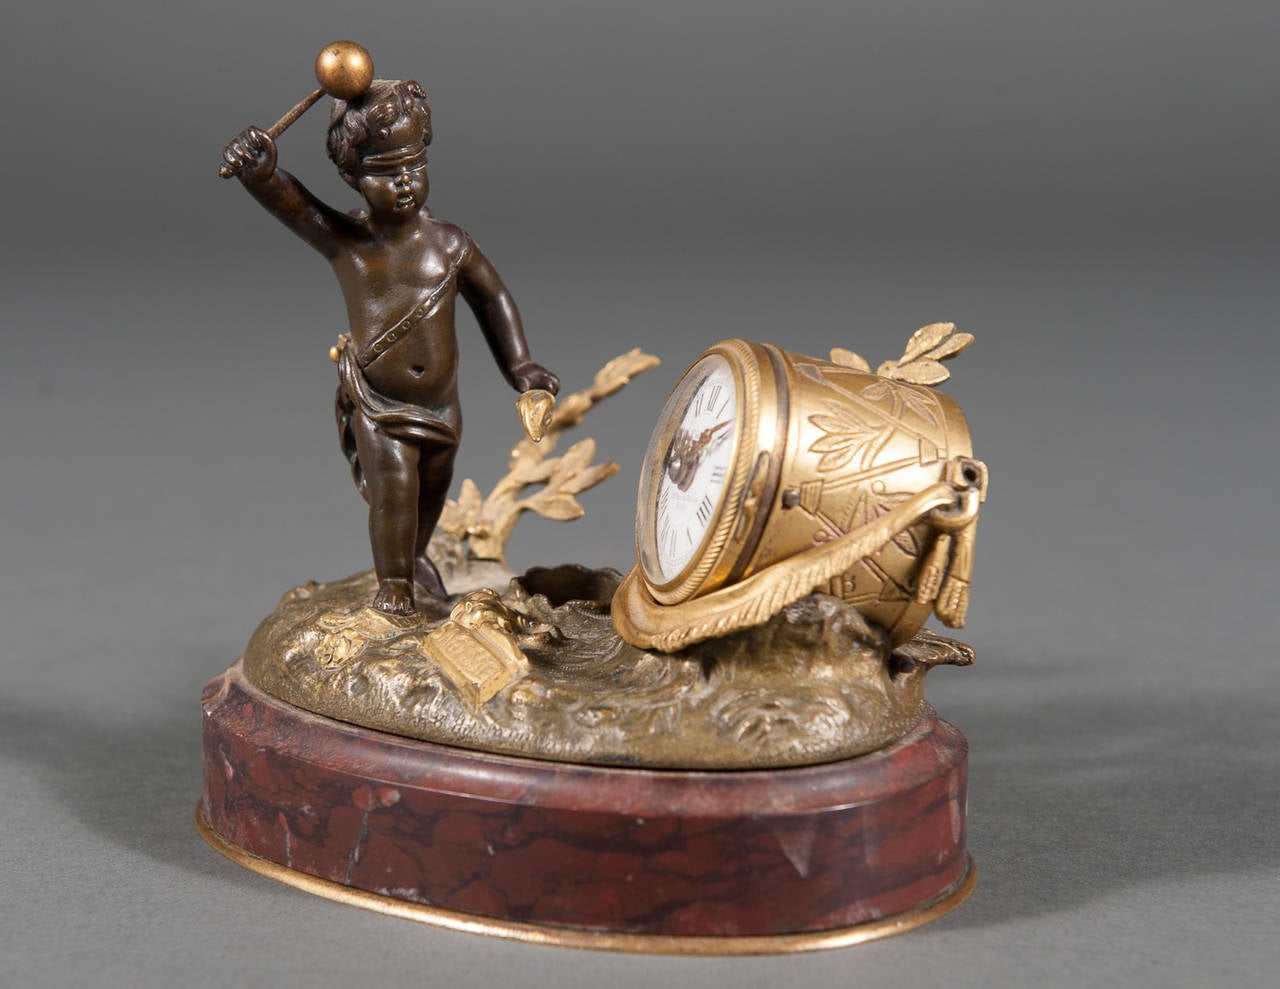 Charmante pendule miniature du XIXe siècle en bronze doré patiné et marbre rouge, avec un Cupidon aux yeux bandés brandissant une torche et un maillet de tambour prêt à sonner une horloge en forme de tambour, le cadran circulaire en émail blanc avec